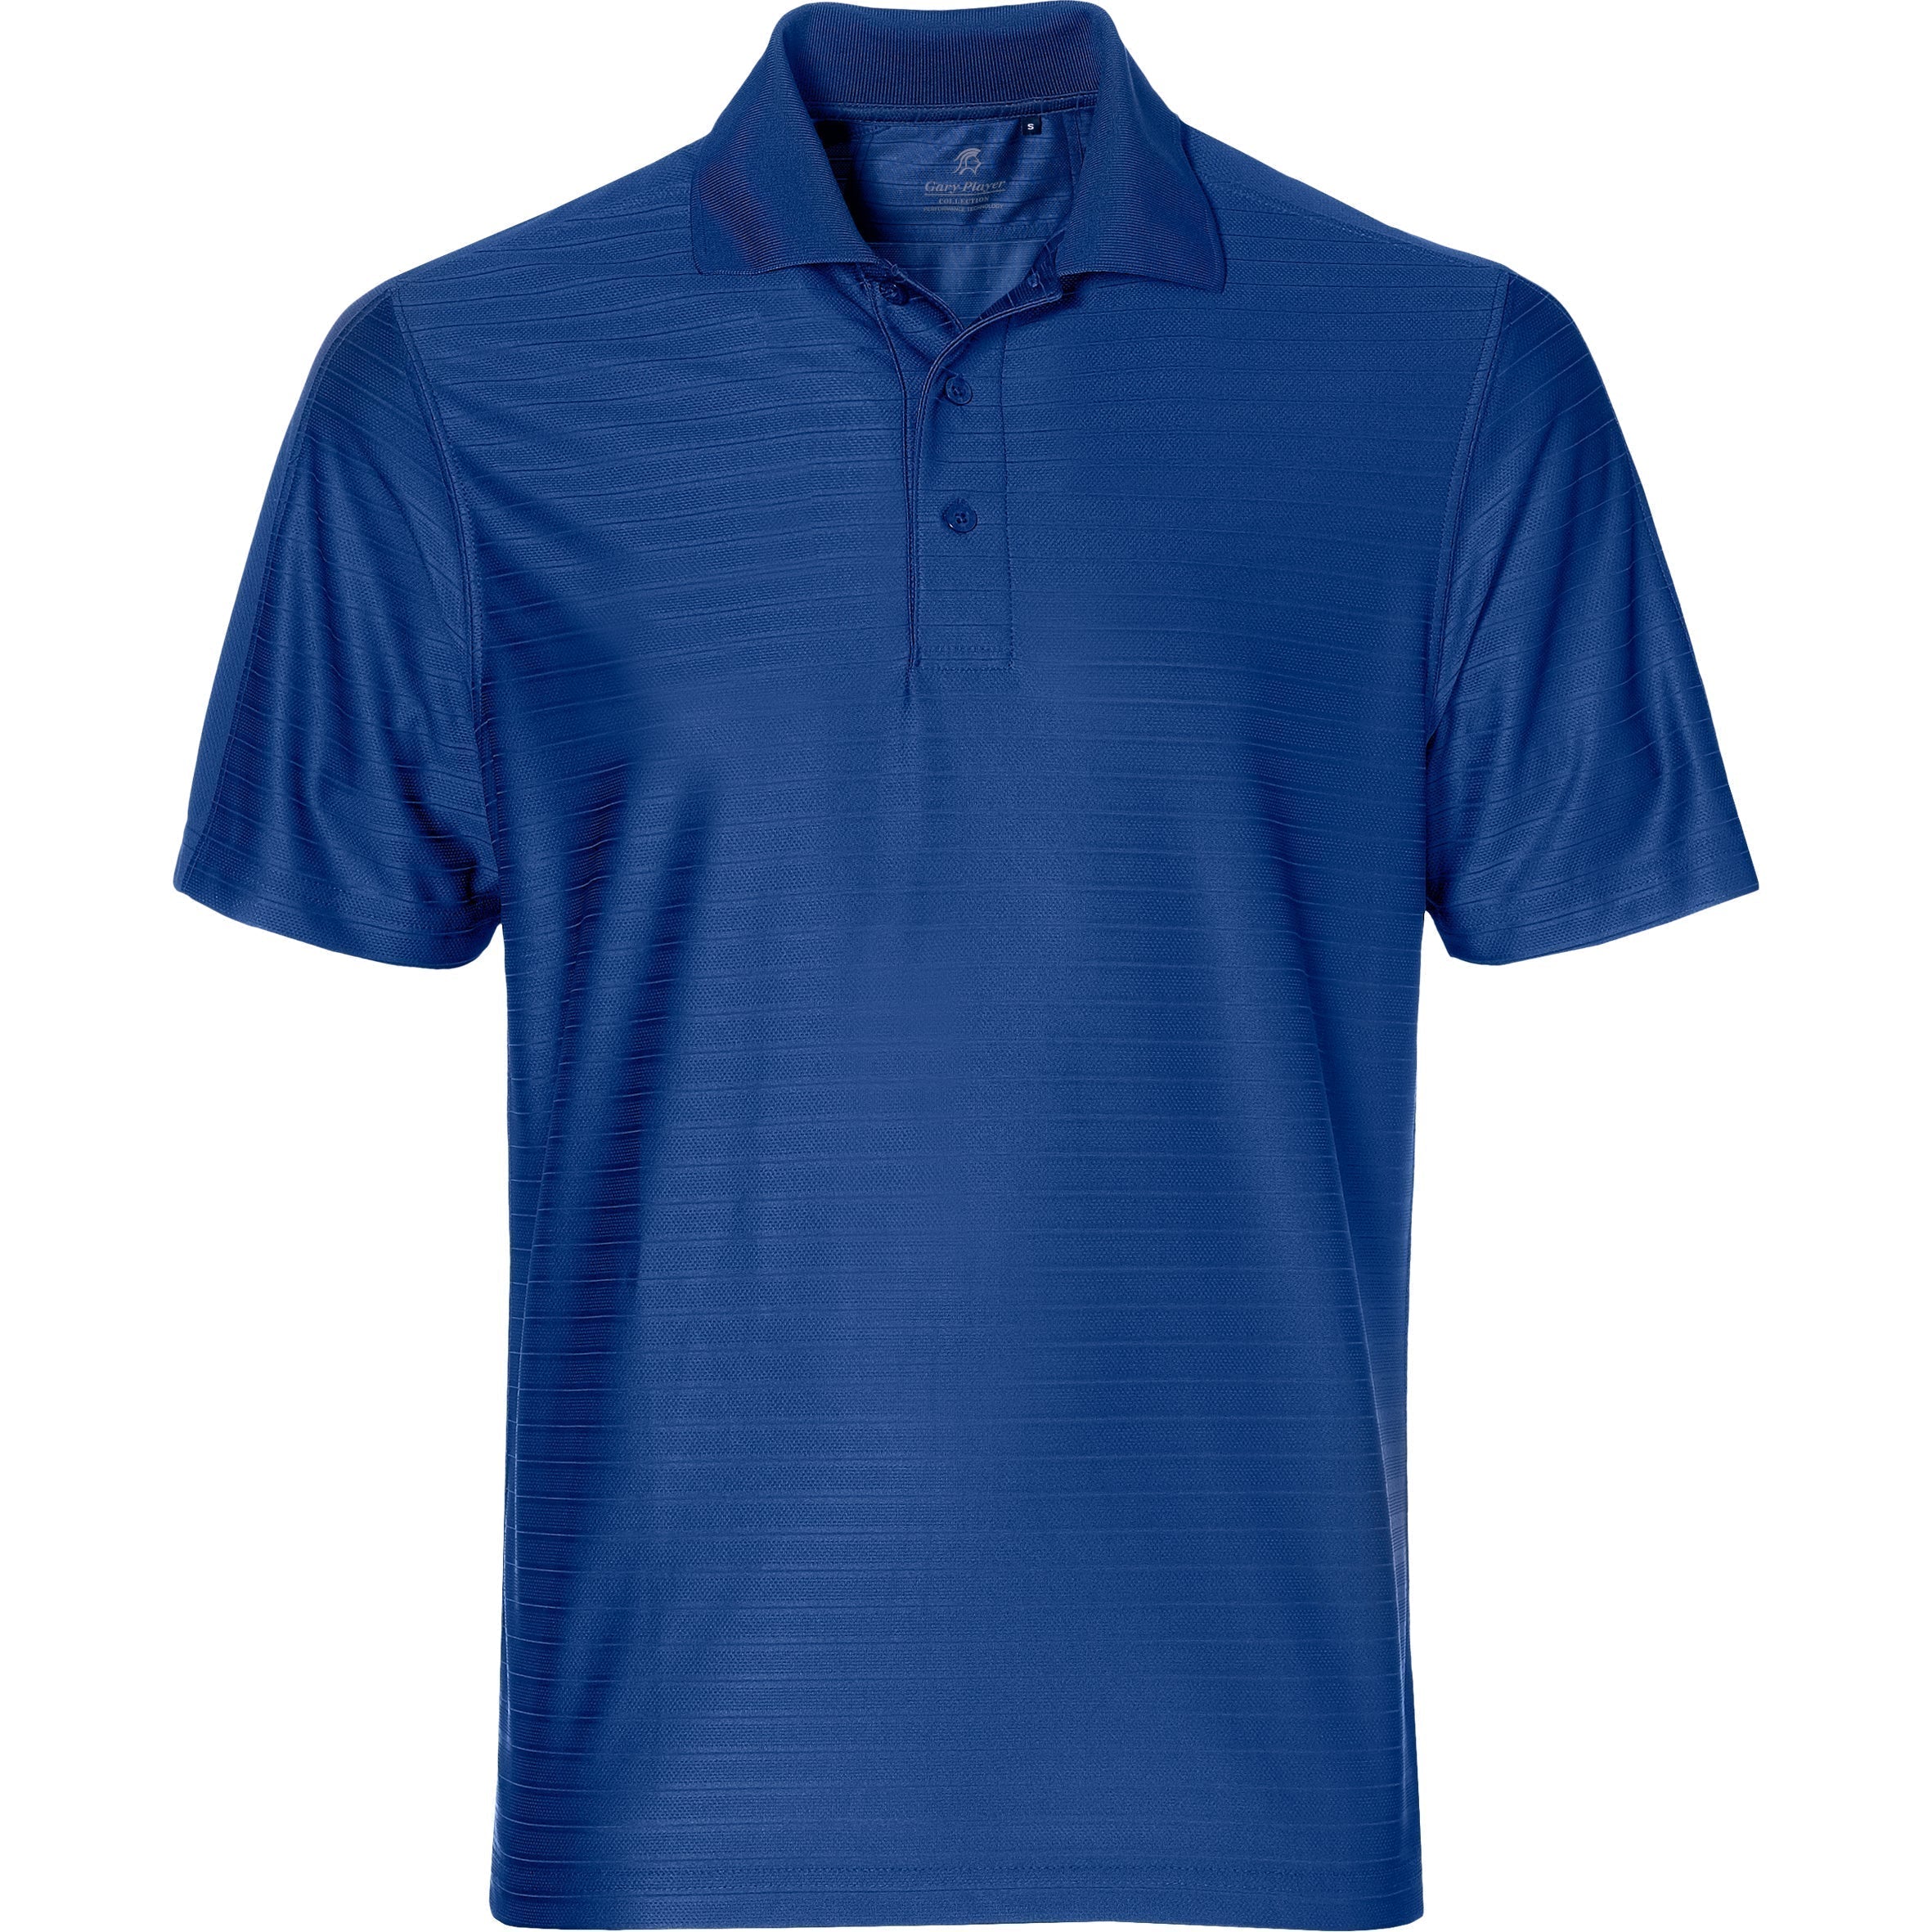 Mens Oakland Hills Golf Shirt-2XL-Navy-N